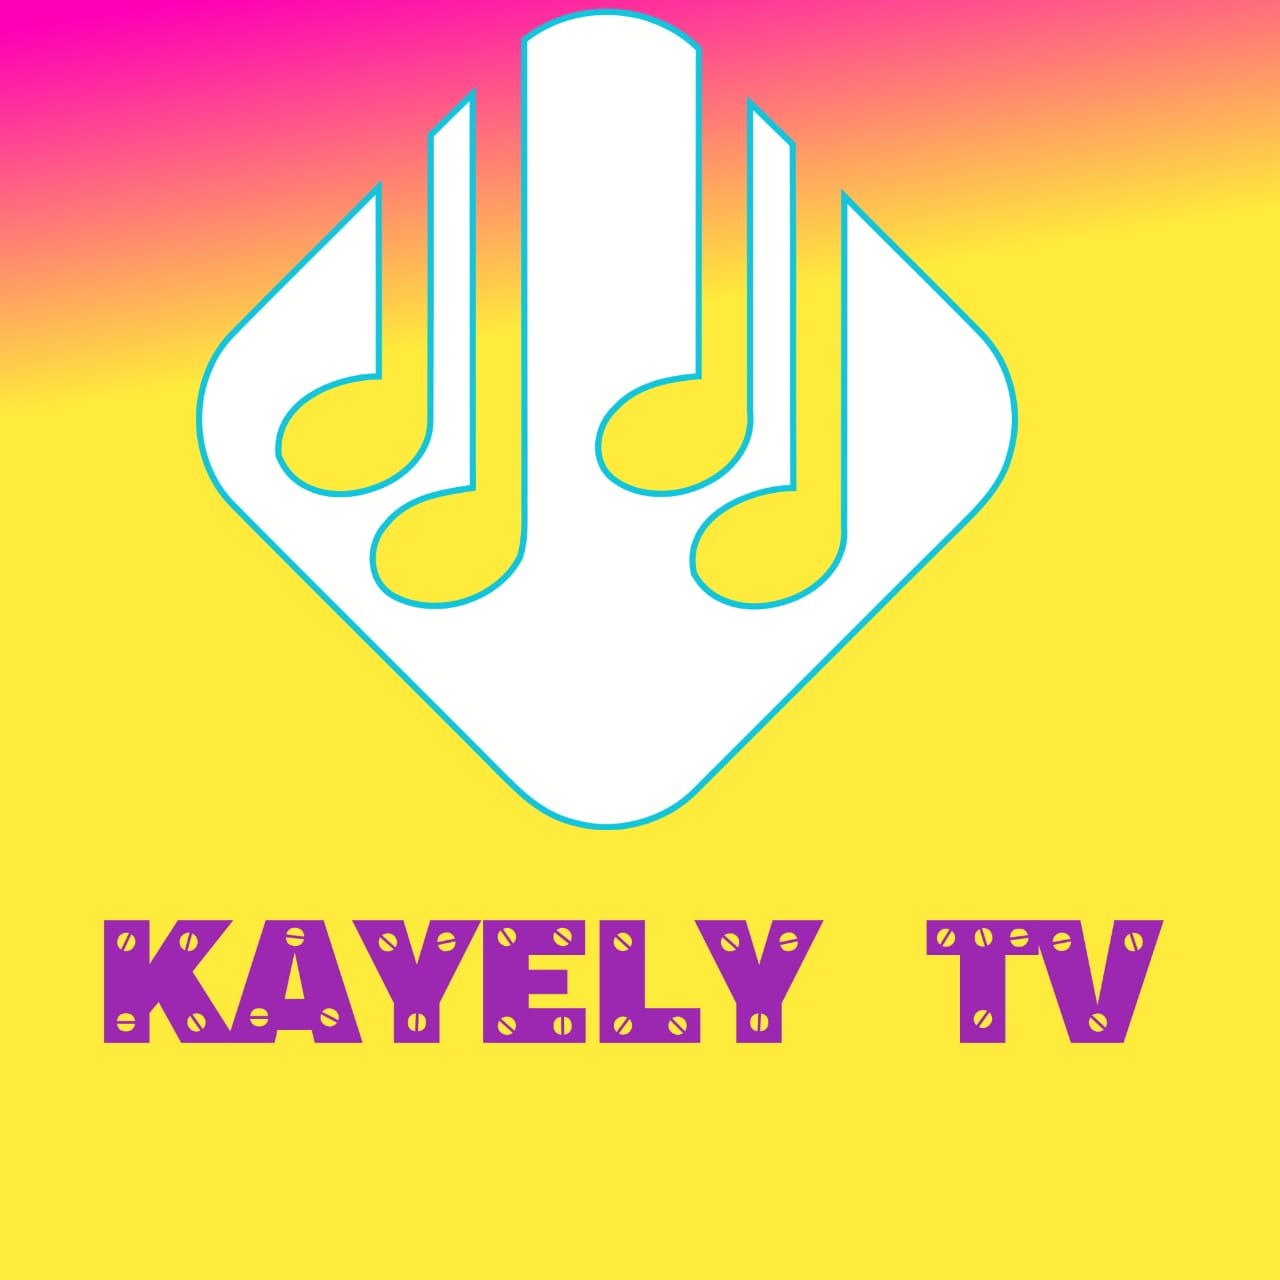 KAYELY TV2